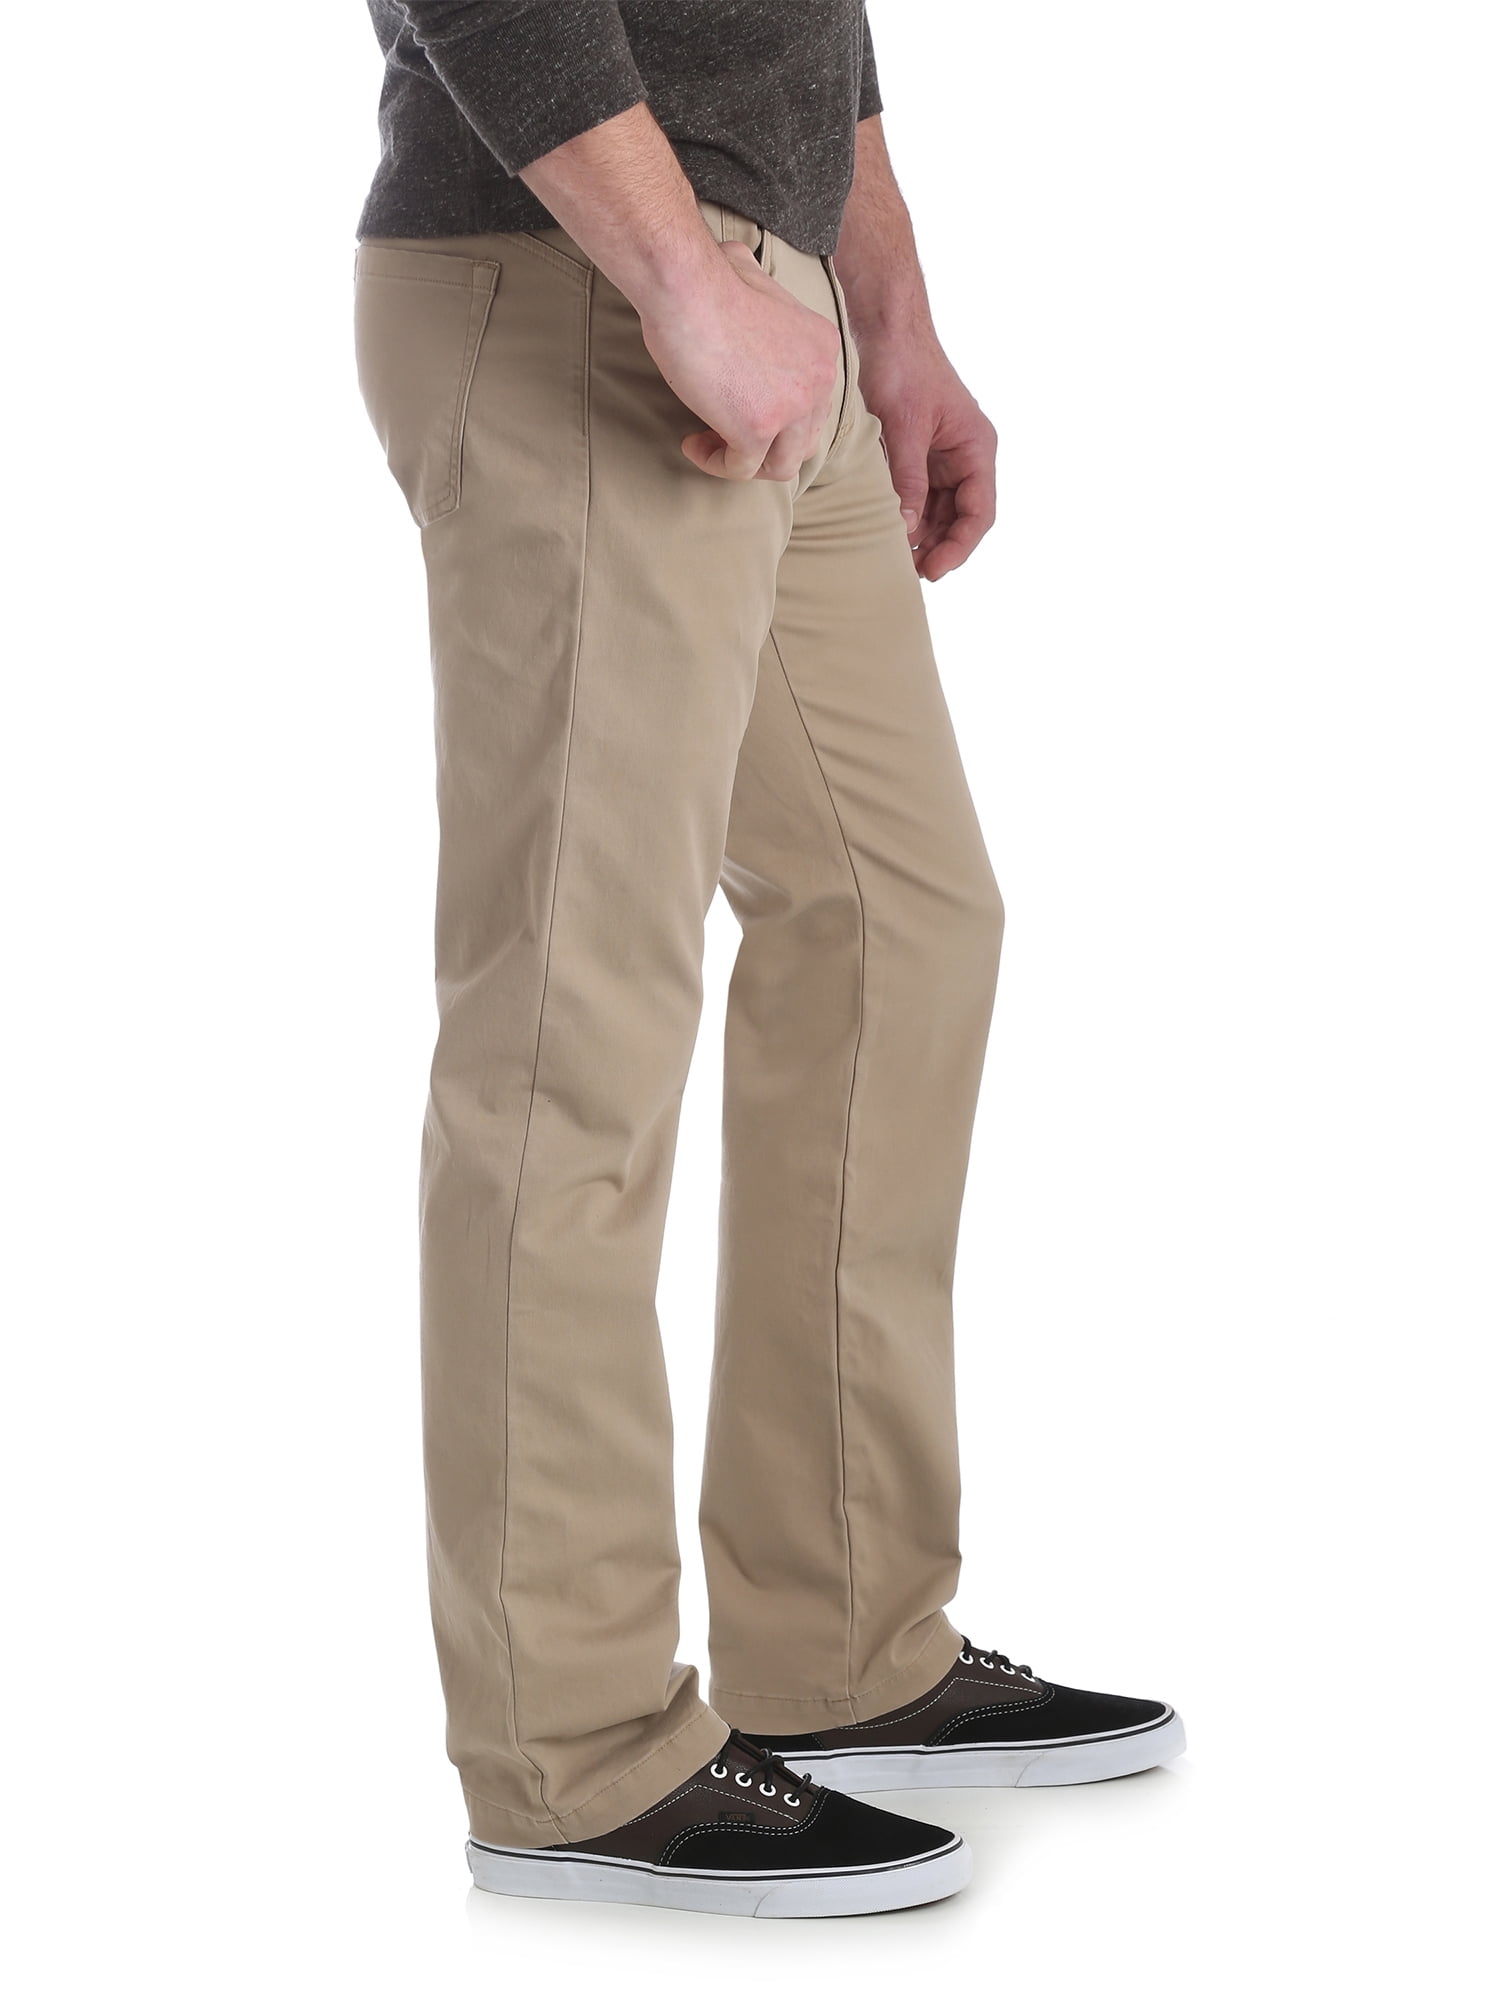 Wrangler Men's Performance Series 5 Pocket Pant 